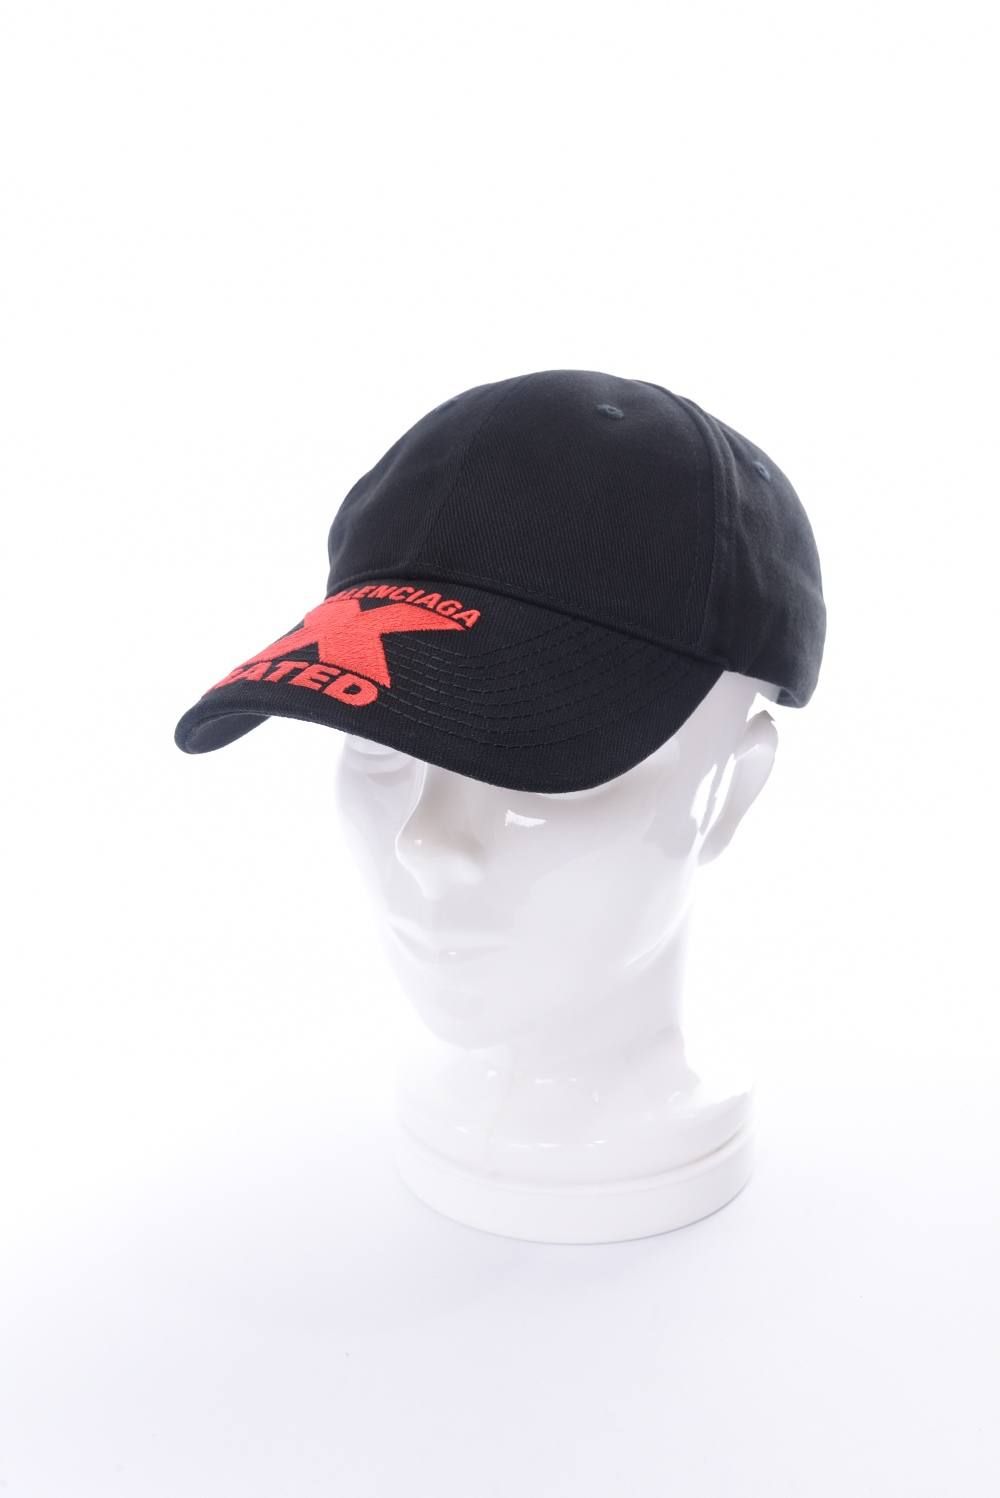 HAT X-RATED CAP / コットンツイル ロゴキャップ ブラック×レッド - フリーサイズ